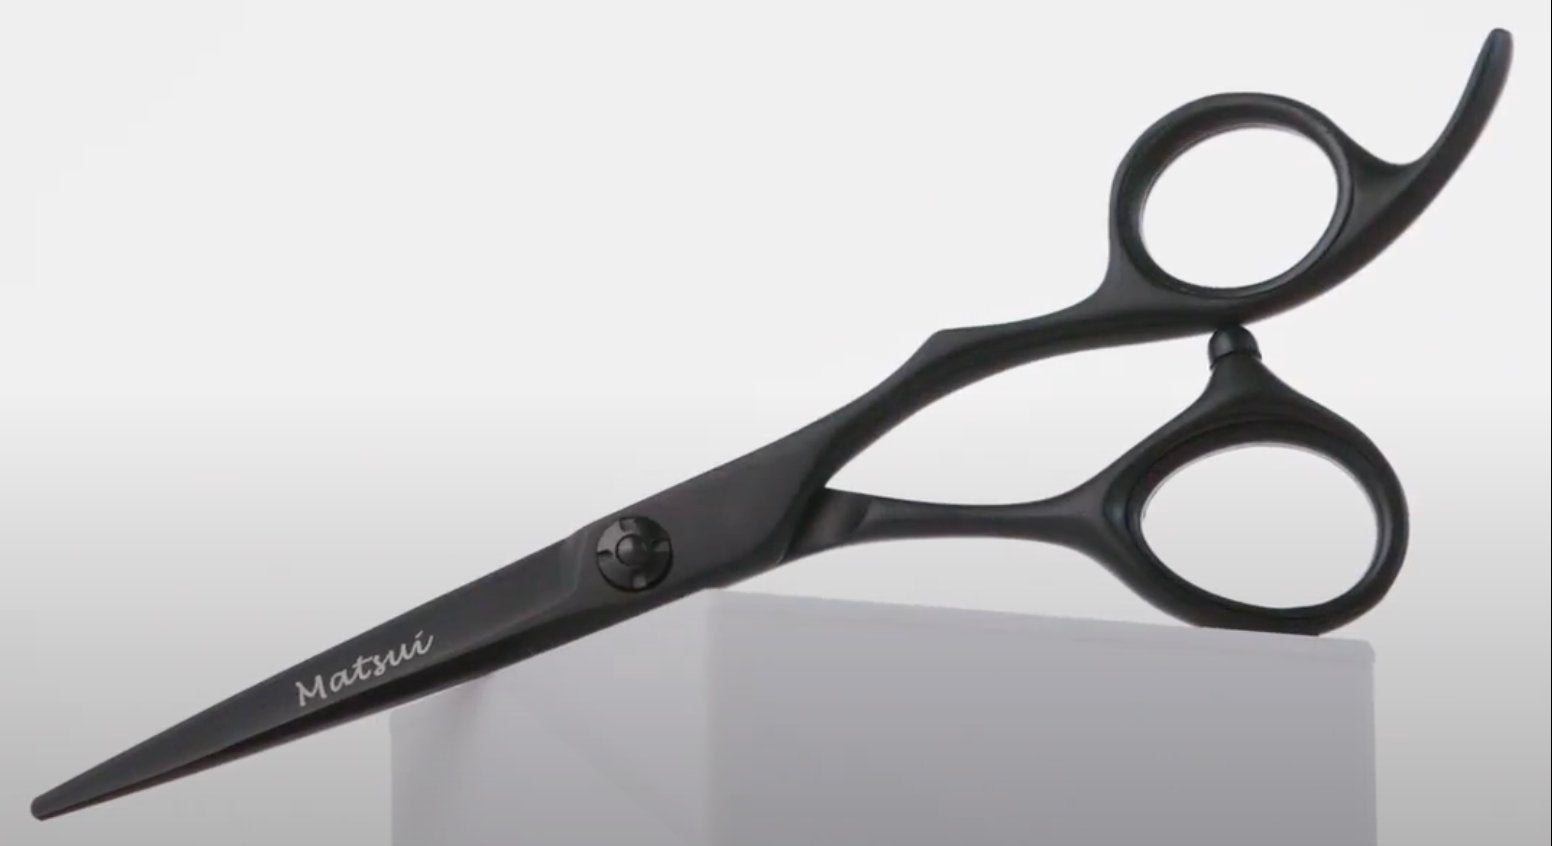 All Salon Pro Scissors